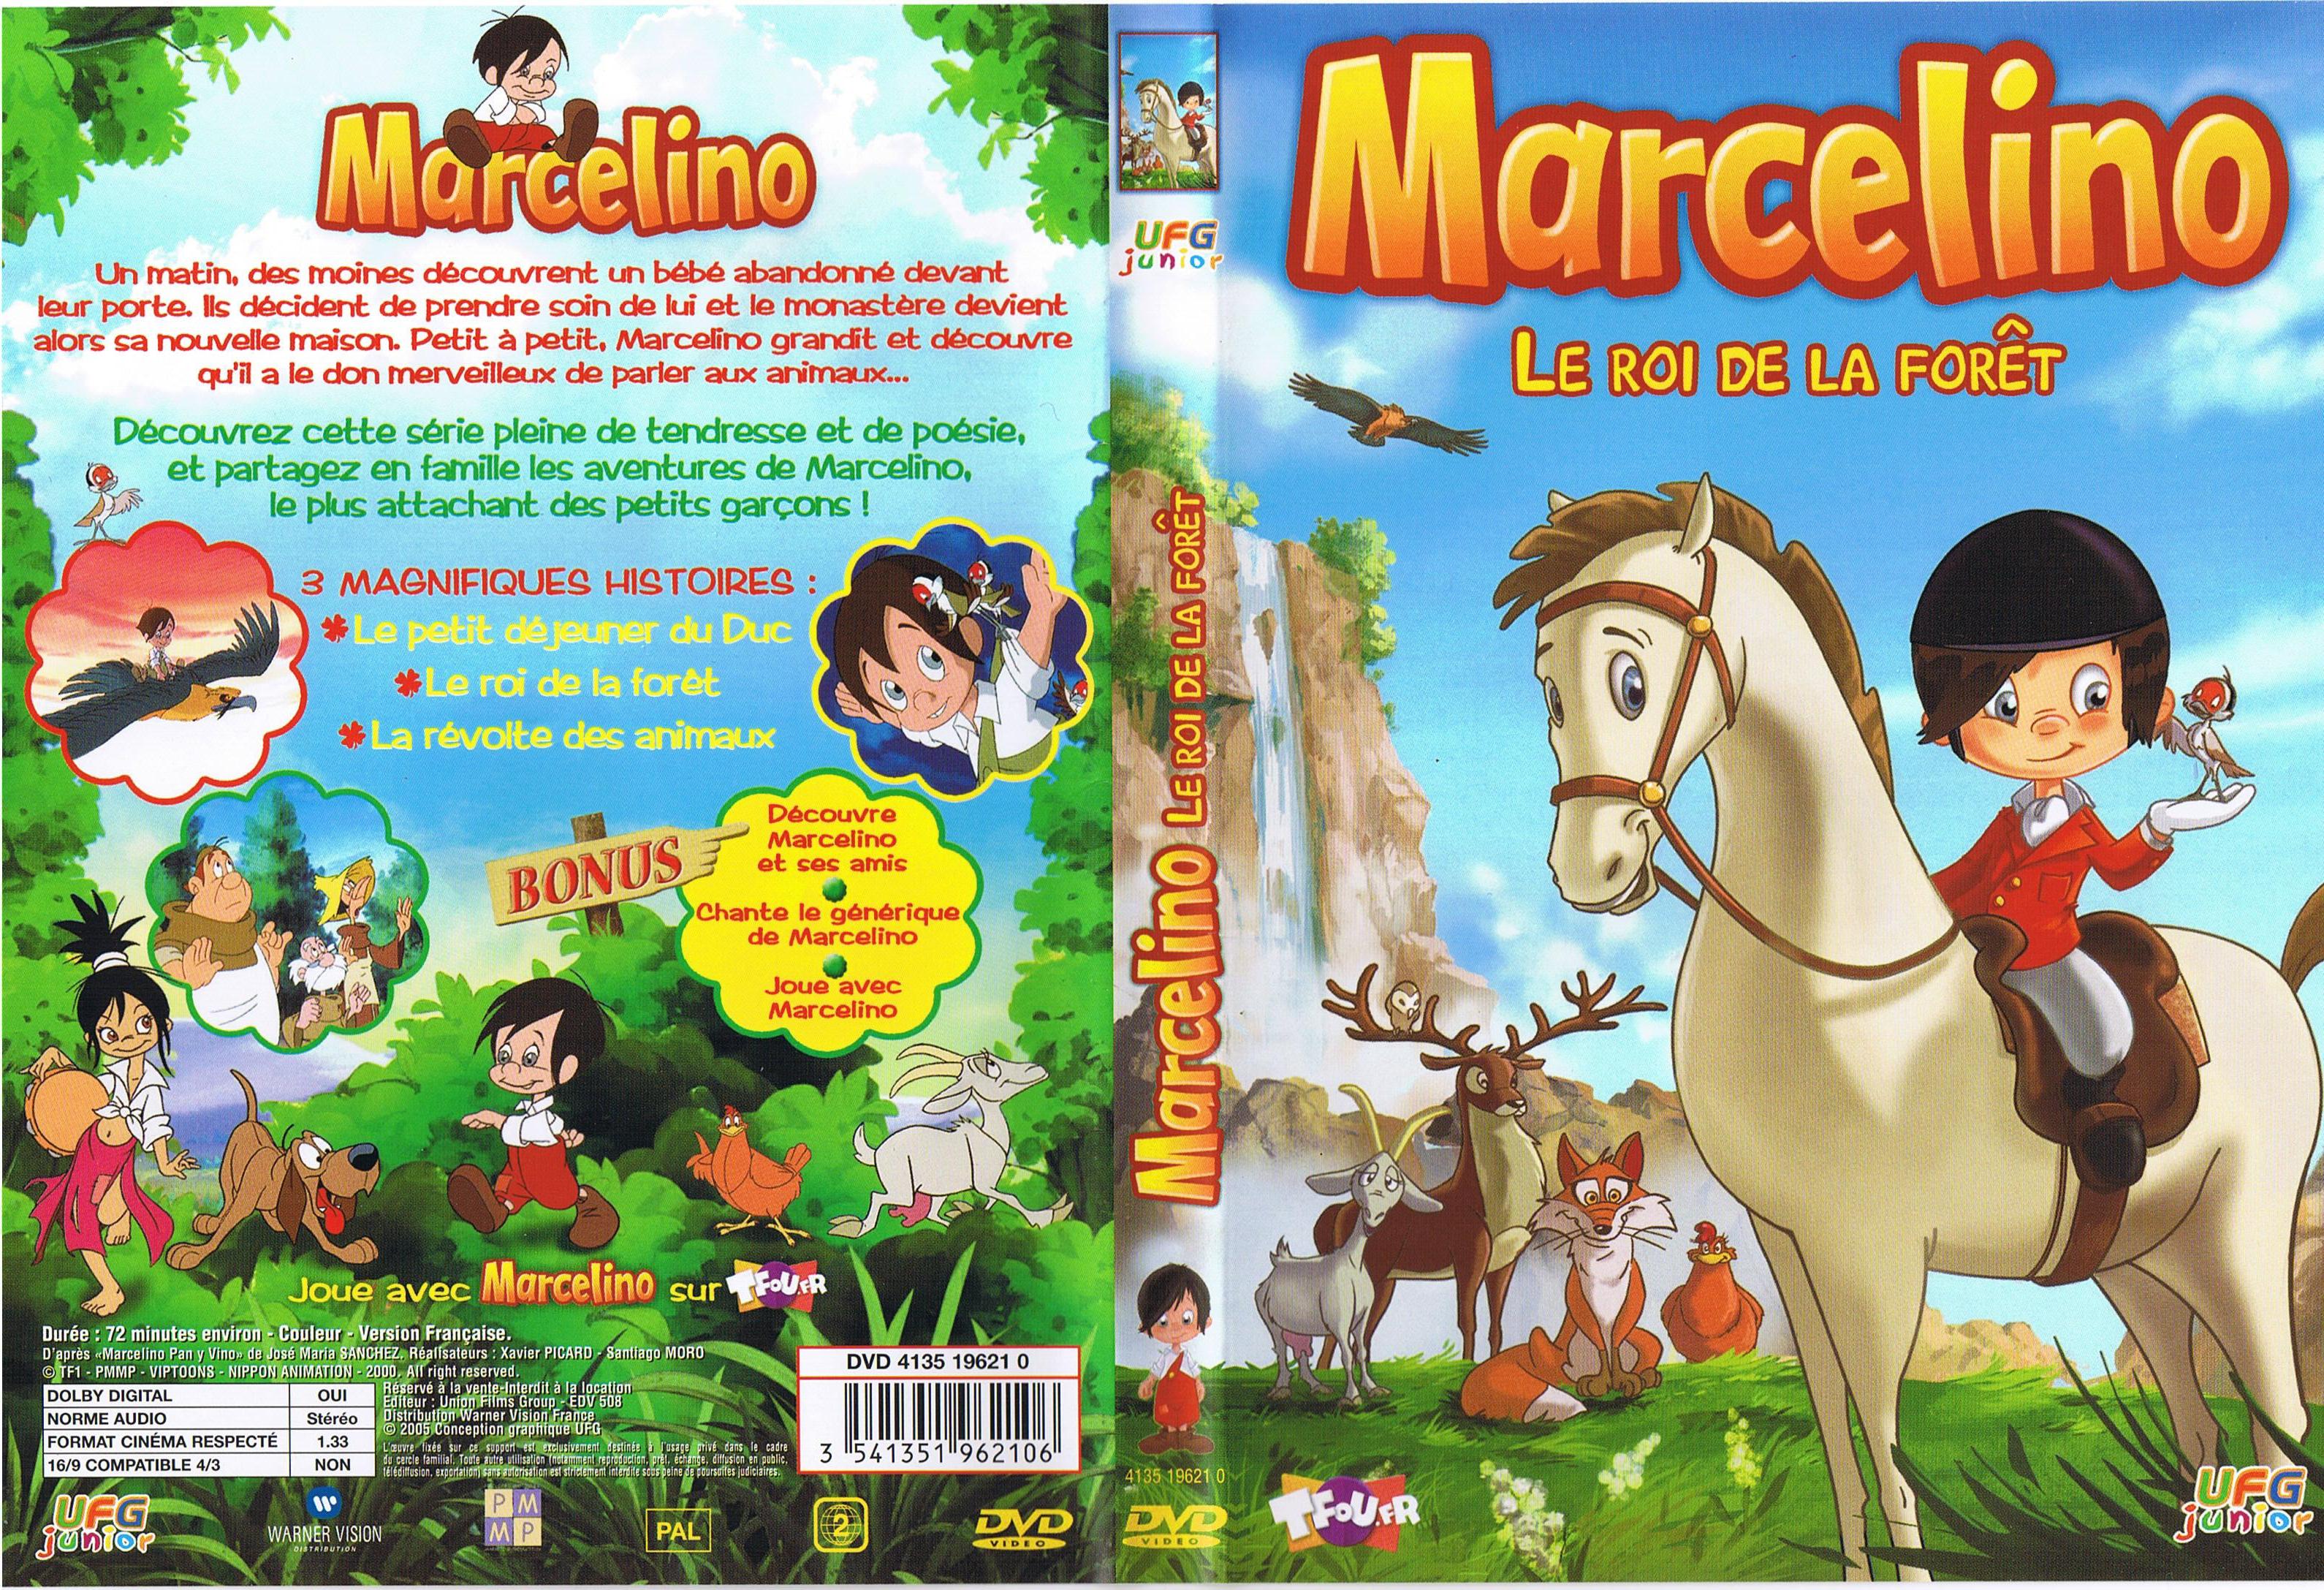 Jaquette DVD Marcelino - Le roi de la foret